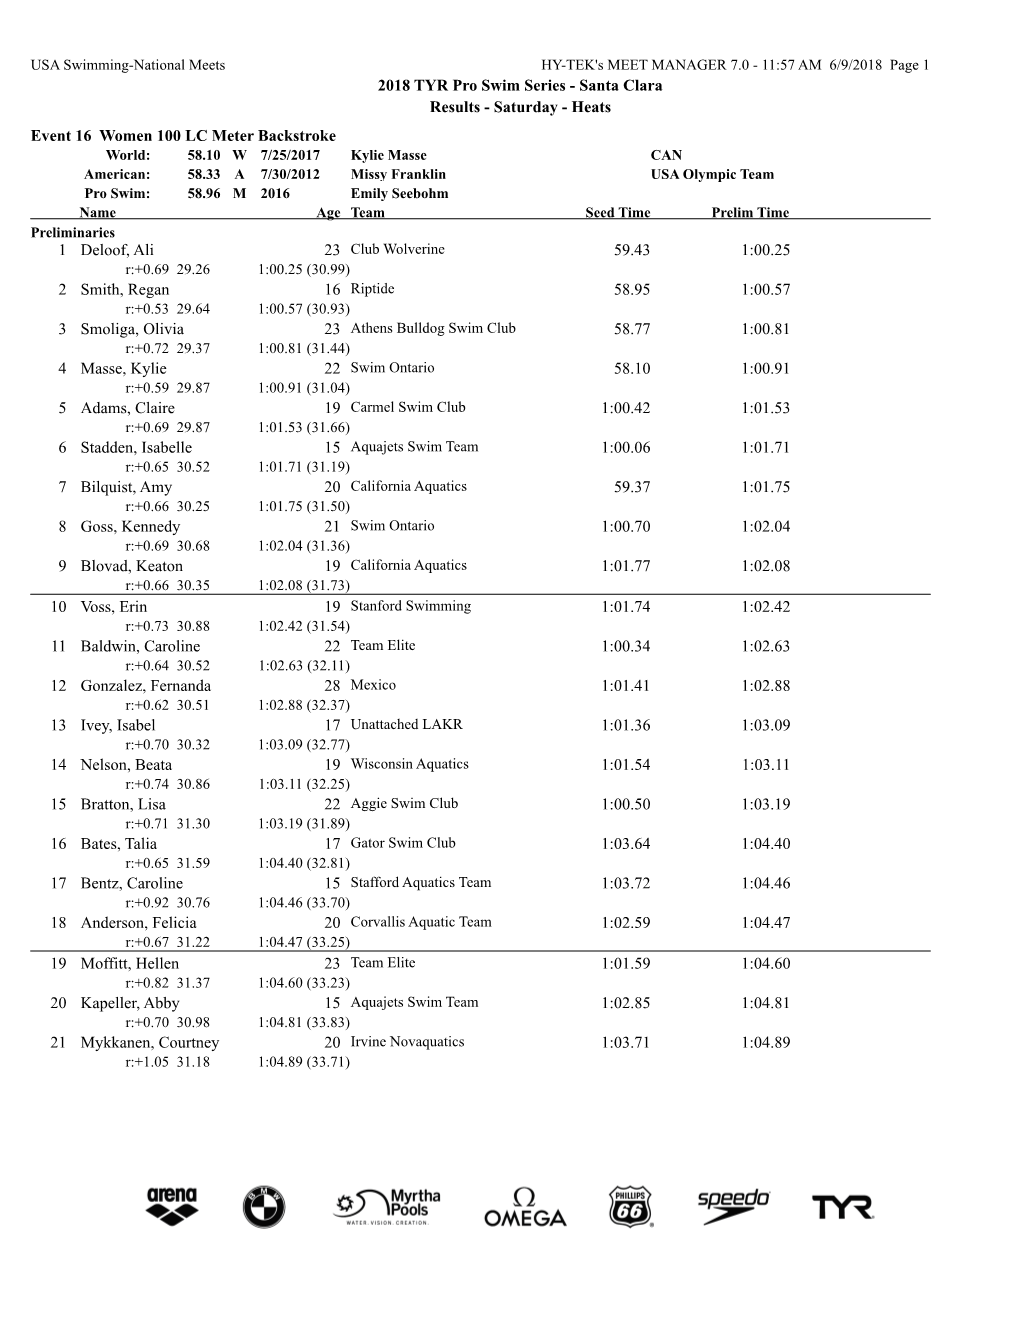 2018 TYR Pro Swim Series - Santa Clara Results - Saturday - Heats